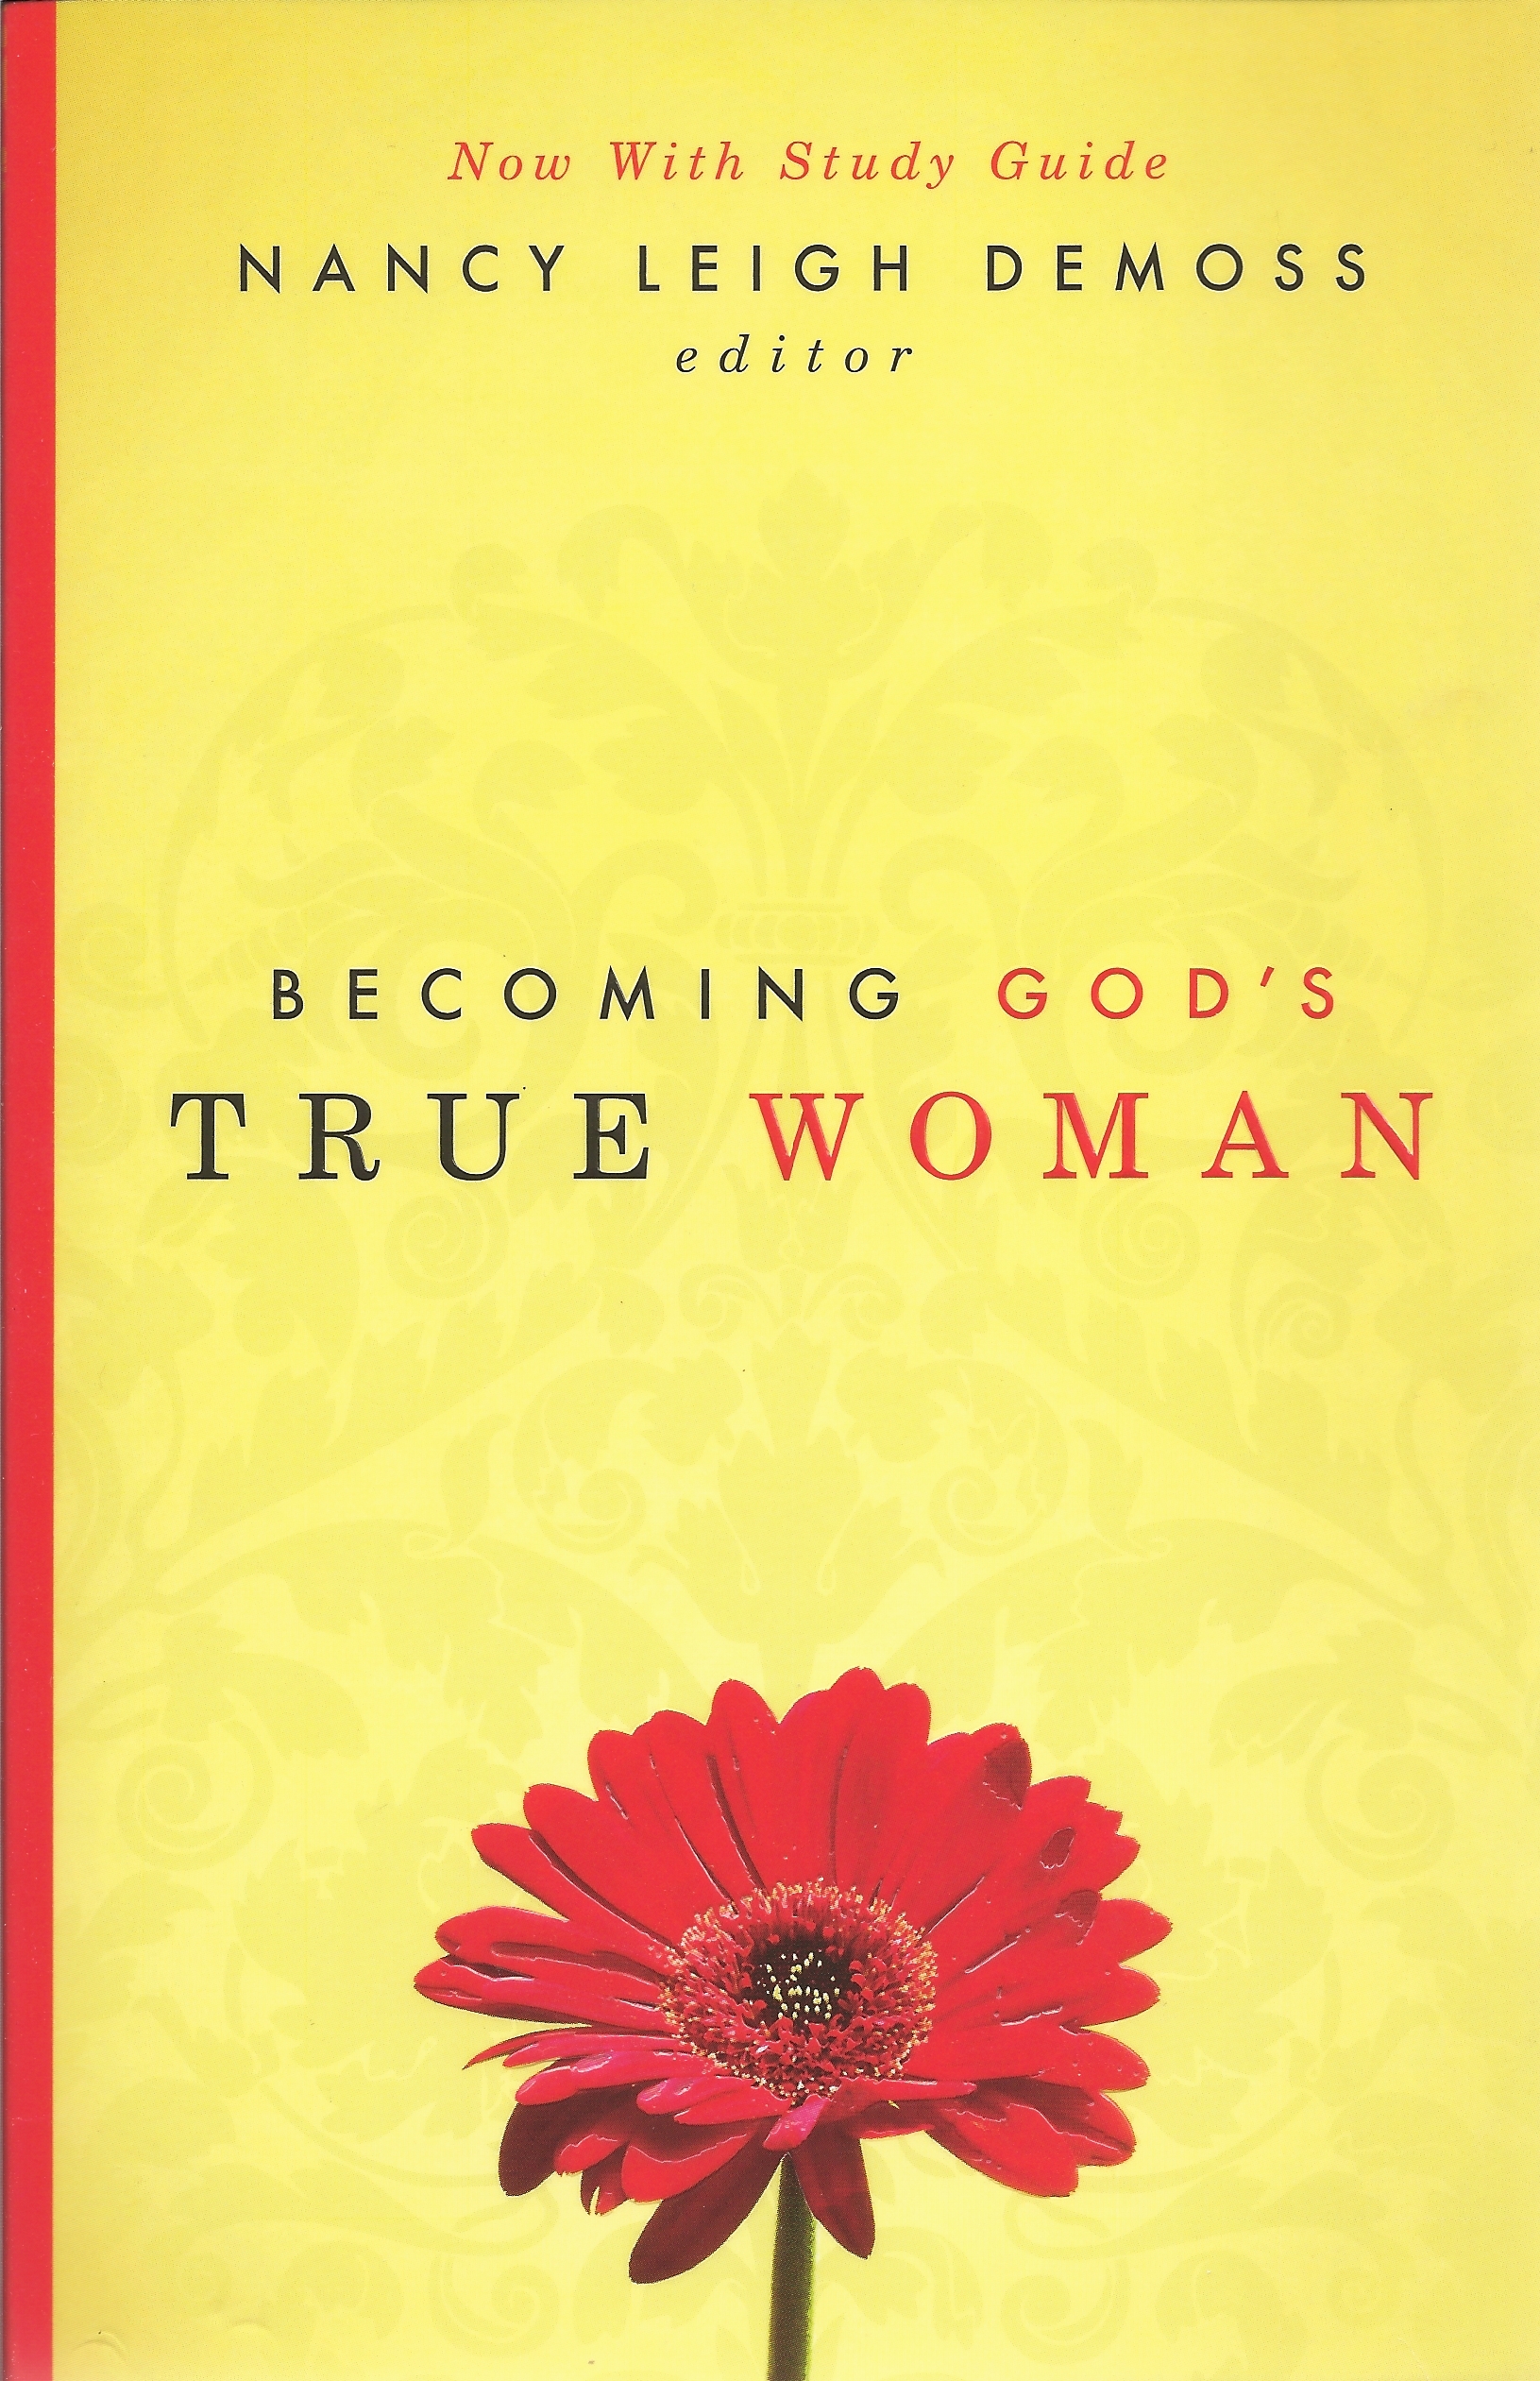 BECOMING GOD'S TRUE WOMAN Nancy Leigh DeMoss